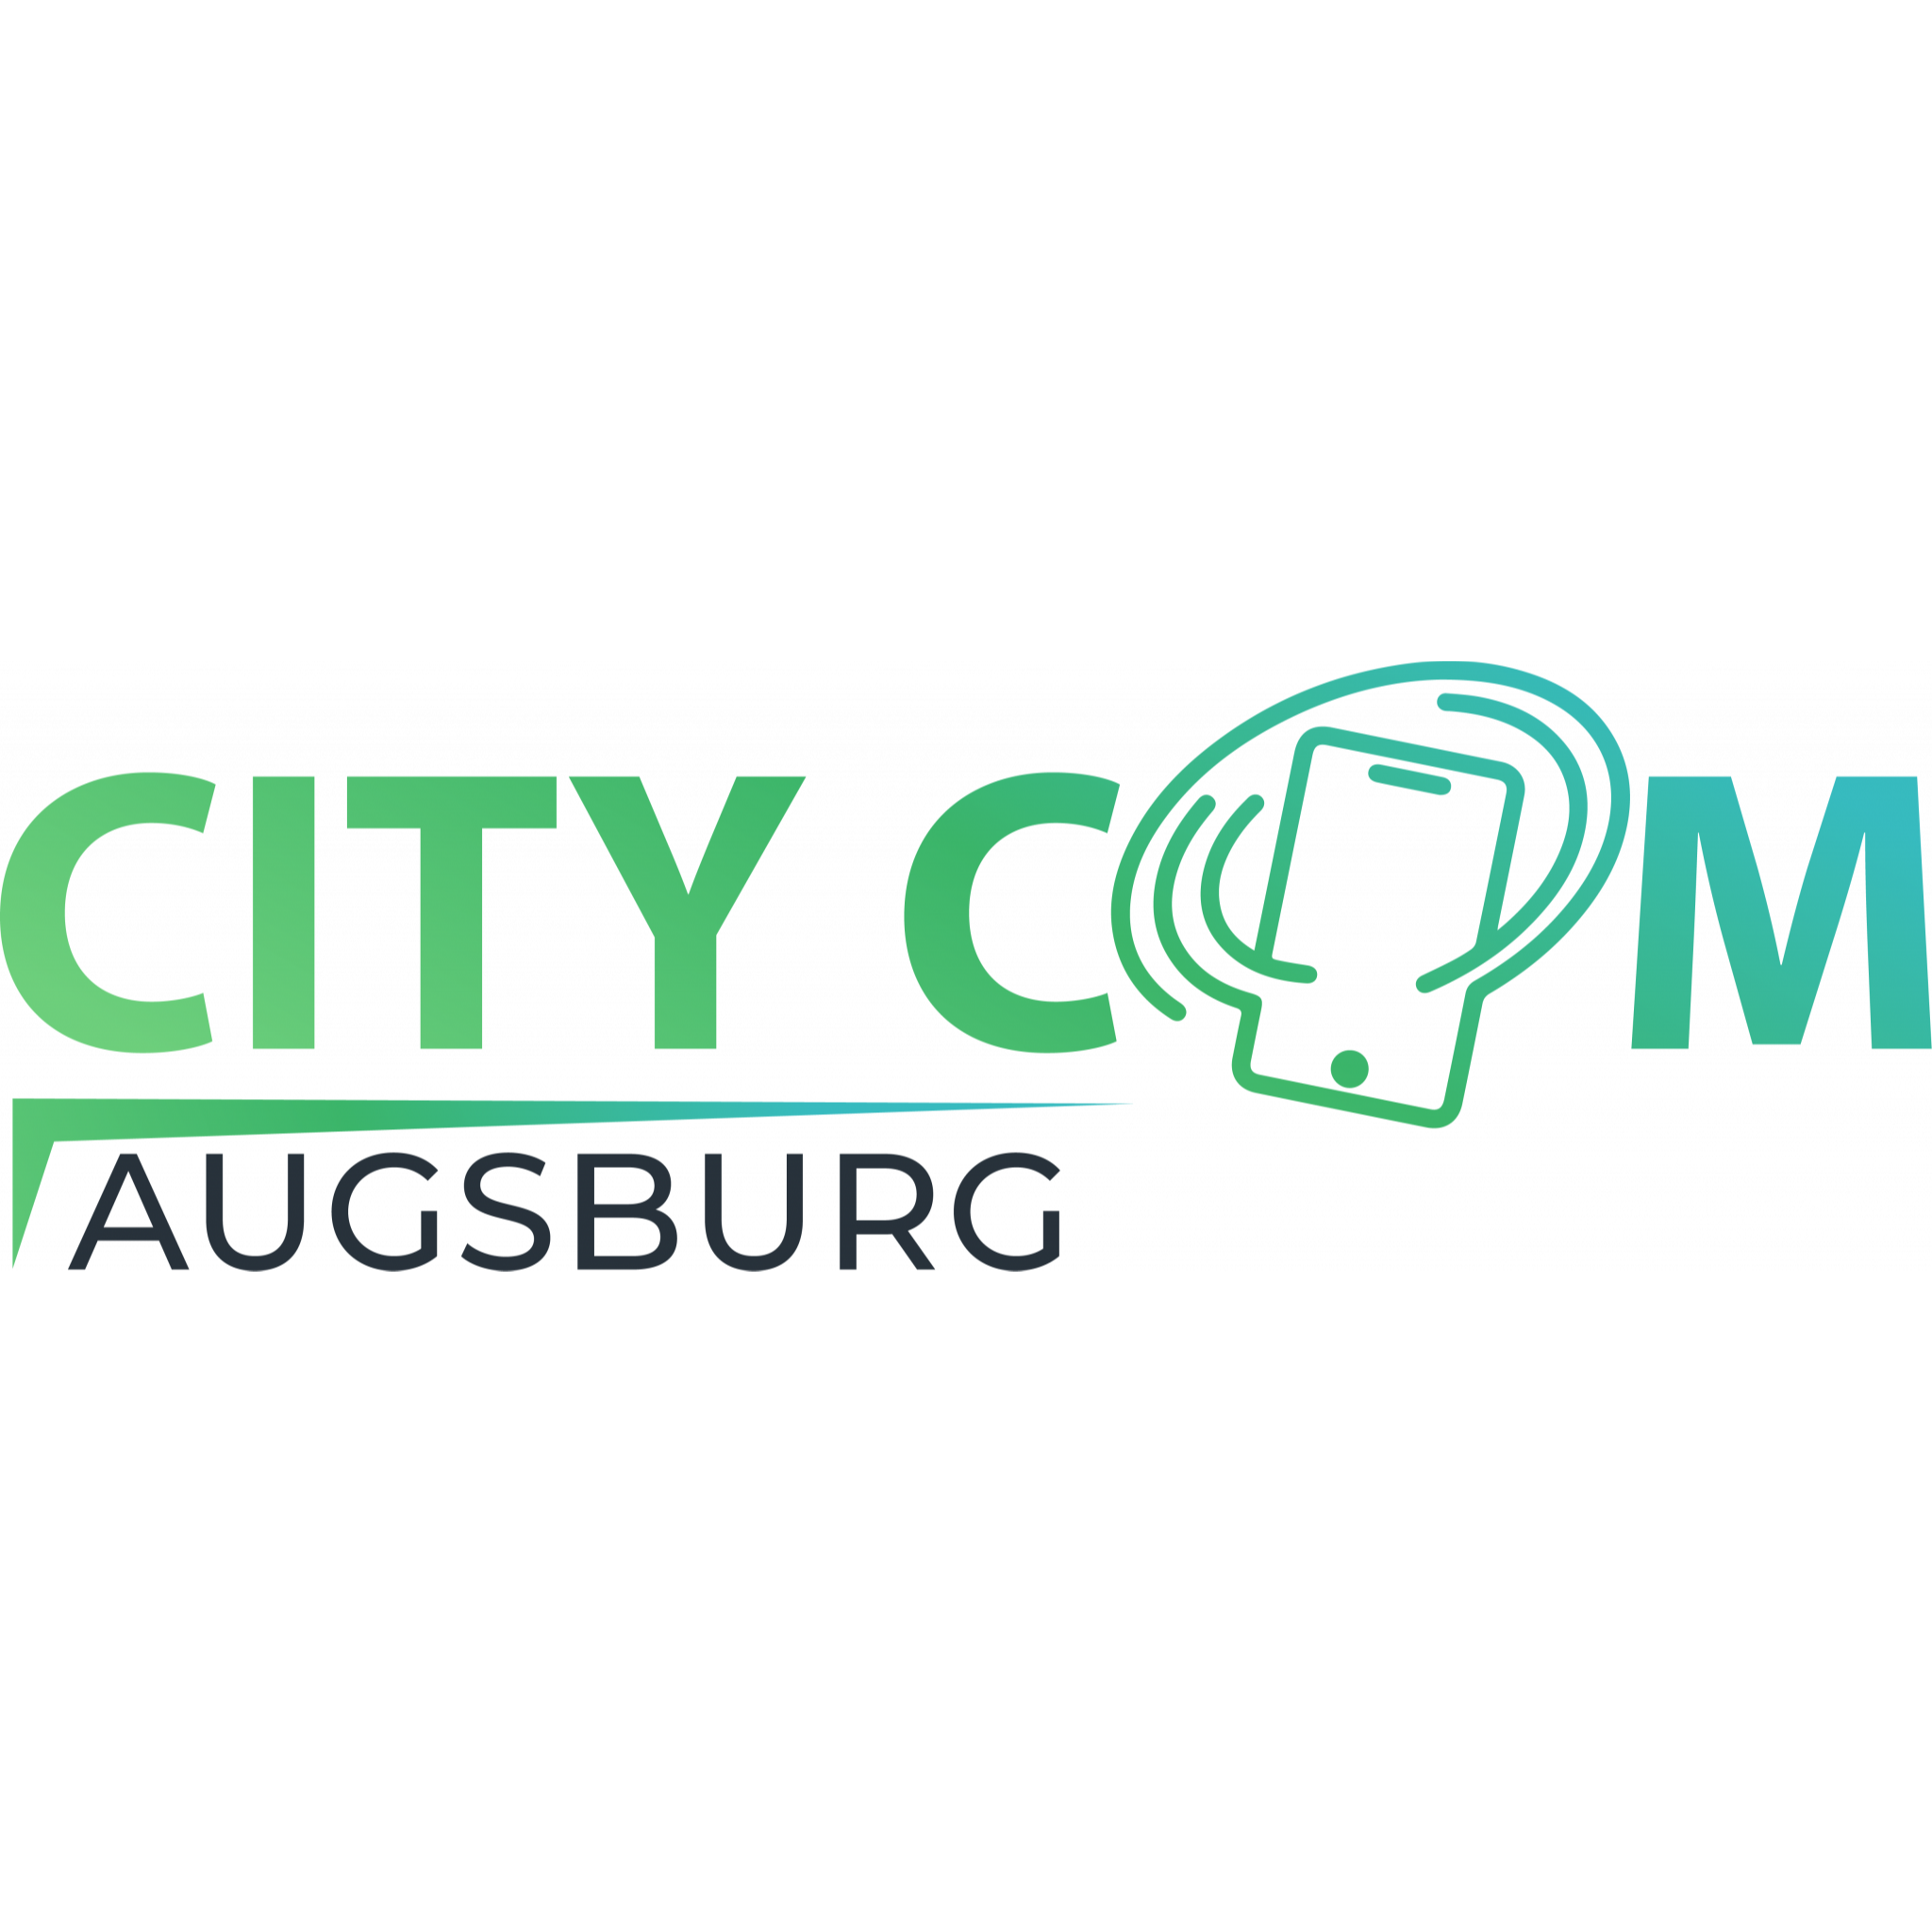 City Com Augsburg